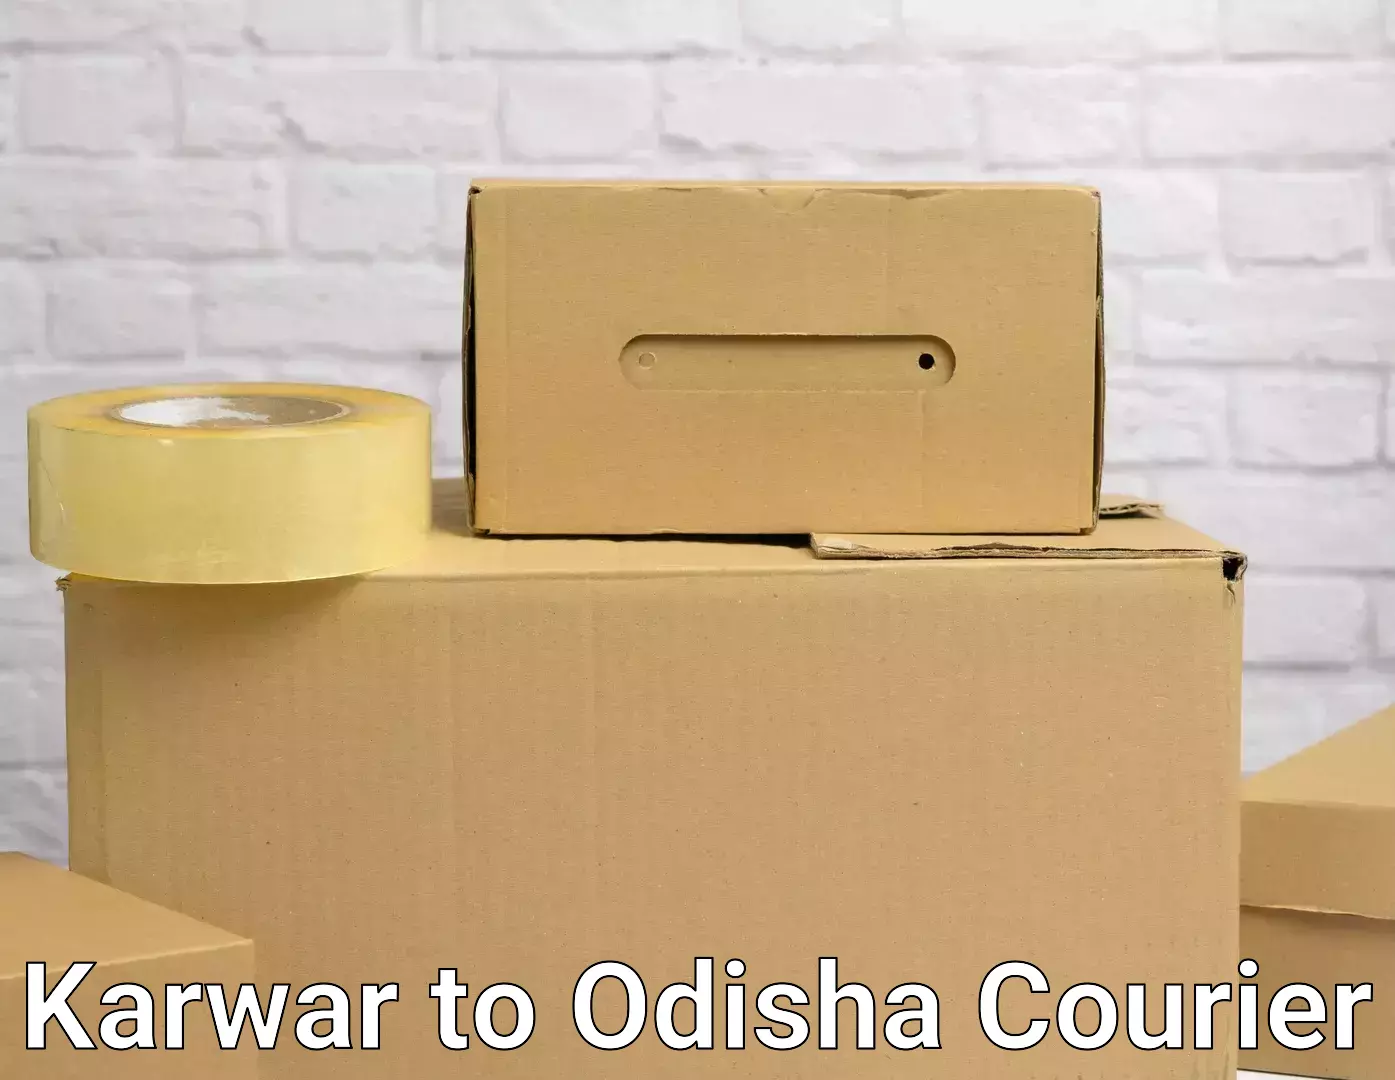 Furniture moving plans Karwar to Puri